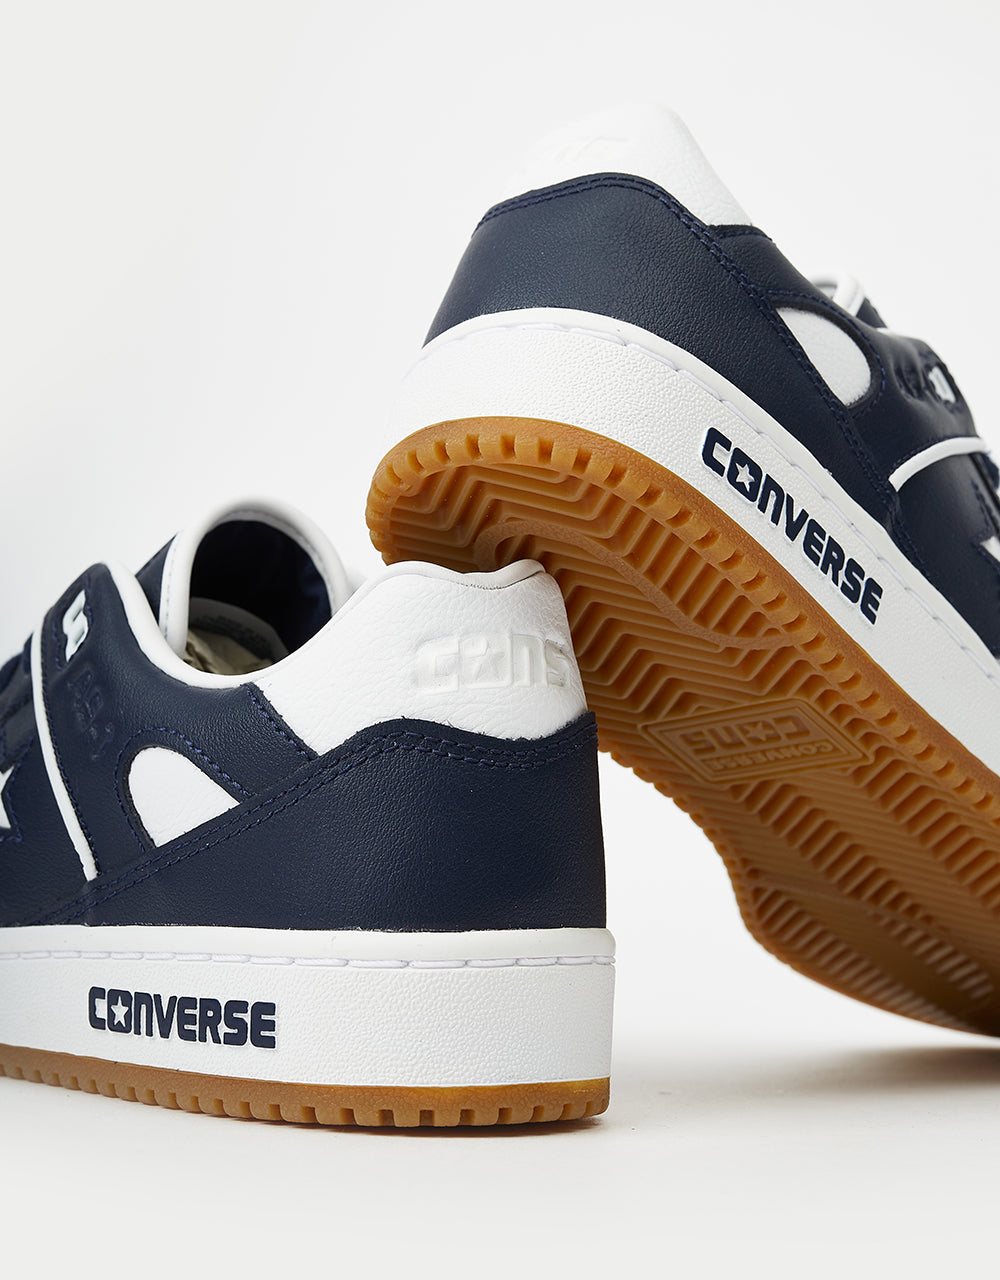 Converse AS-1 Skate Shoes - Obsidian/White/Gum